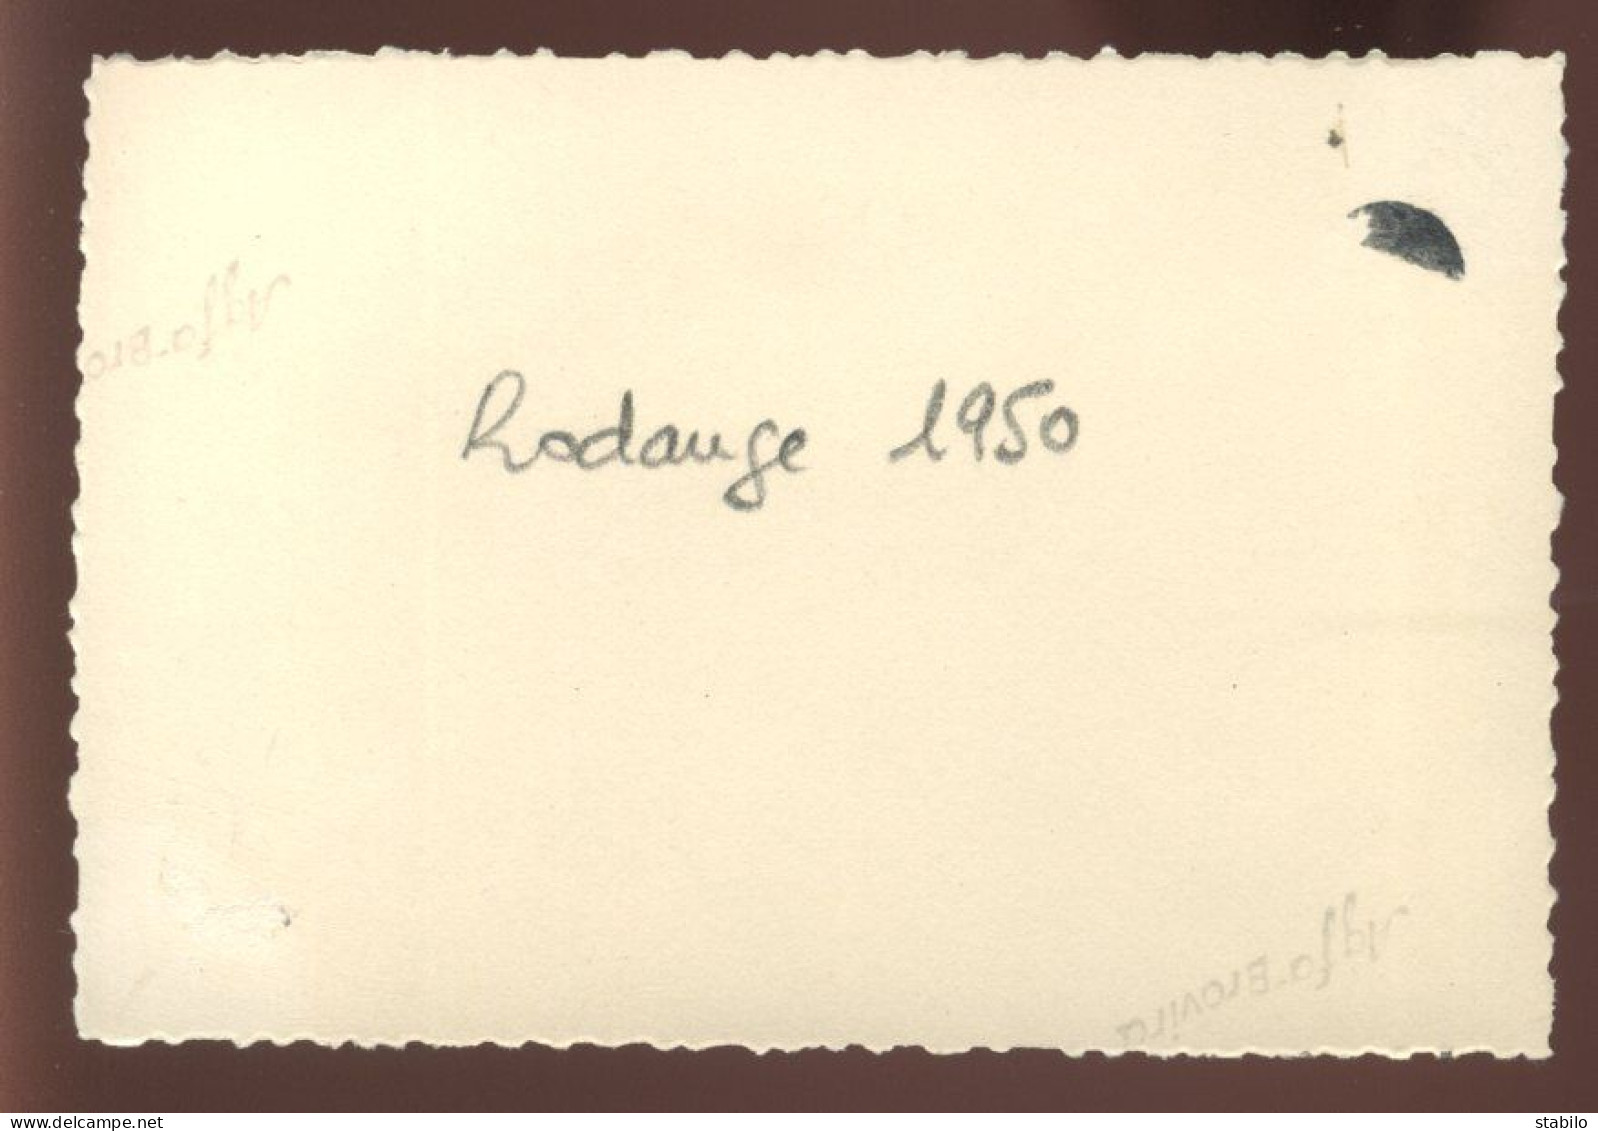 LUXEMBOURG - RODANGE - 1950 - FORMAT 10.5 X 7 CM - Lieux